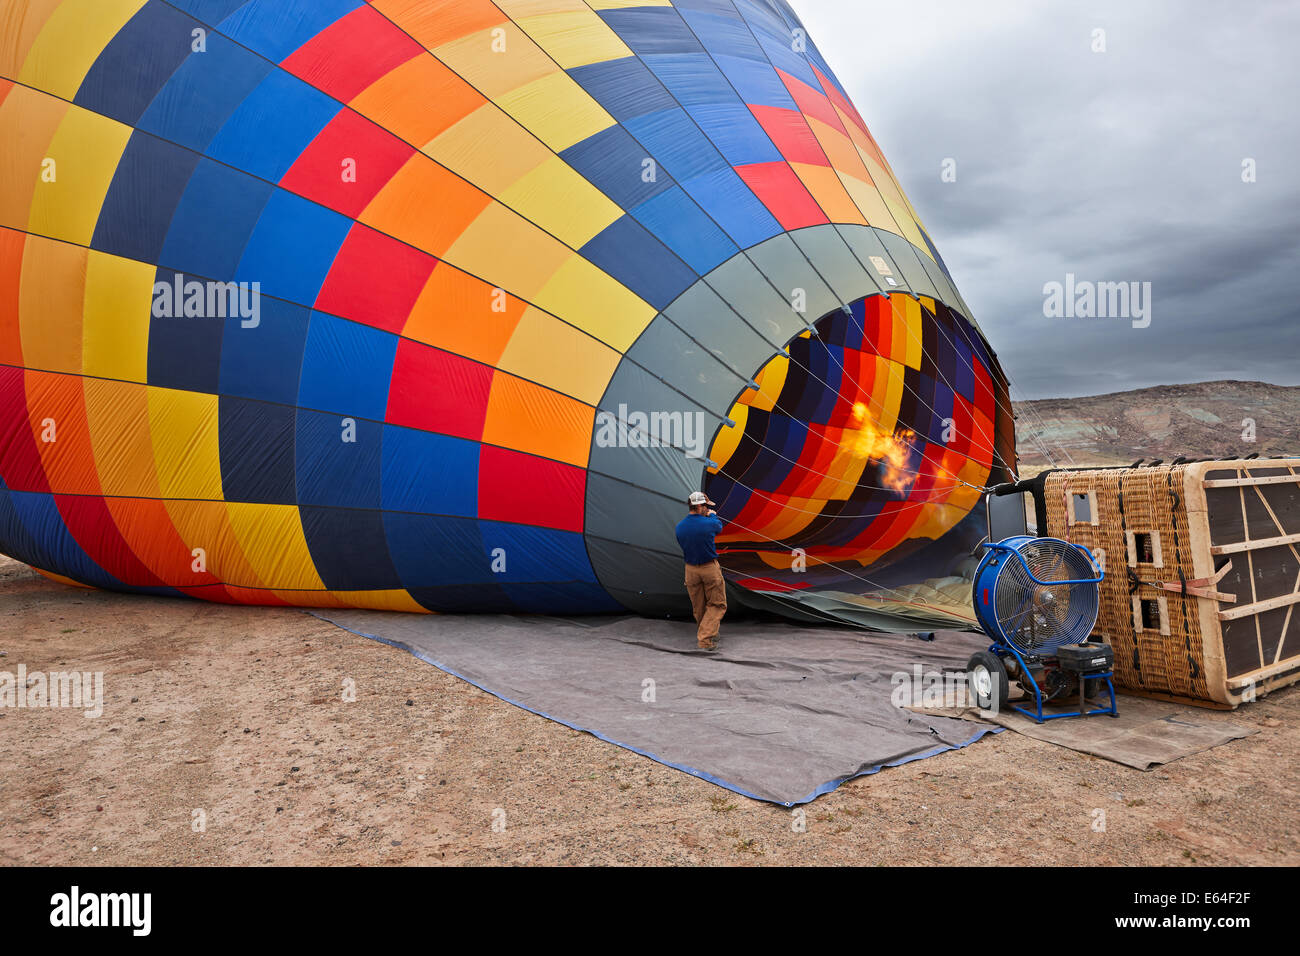 L'homme gonfle un ballon d'air chaud pour un vol. Moab, Utah, États-Unis. Banque D'Images